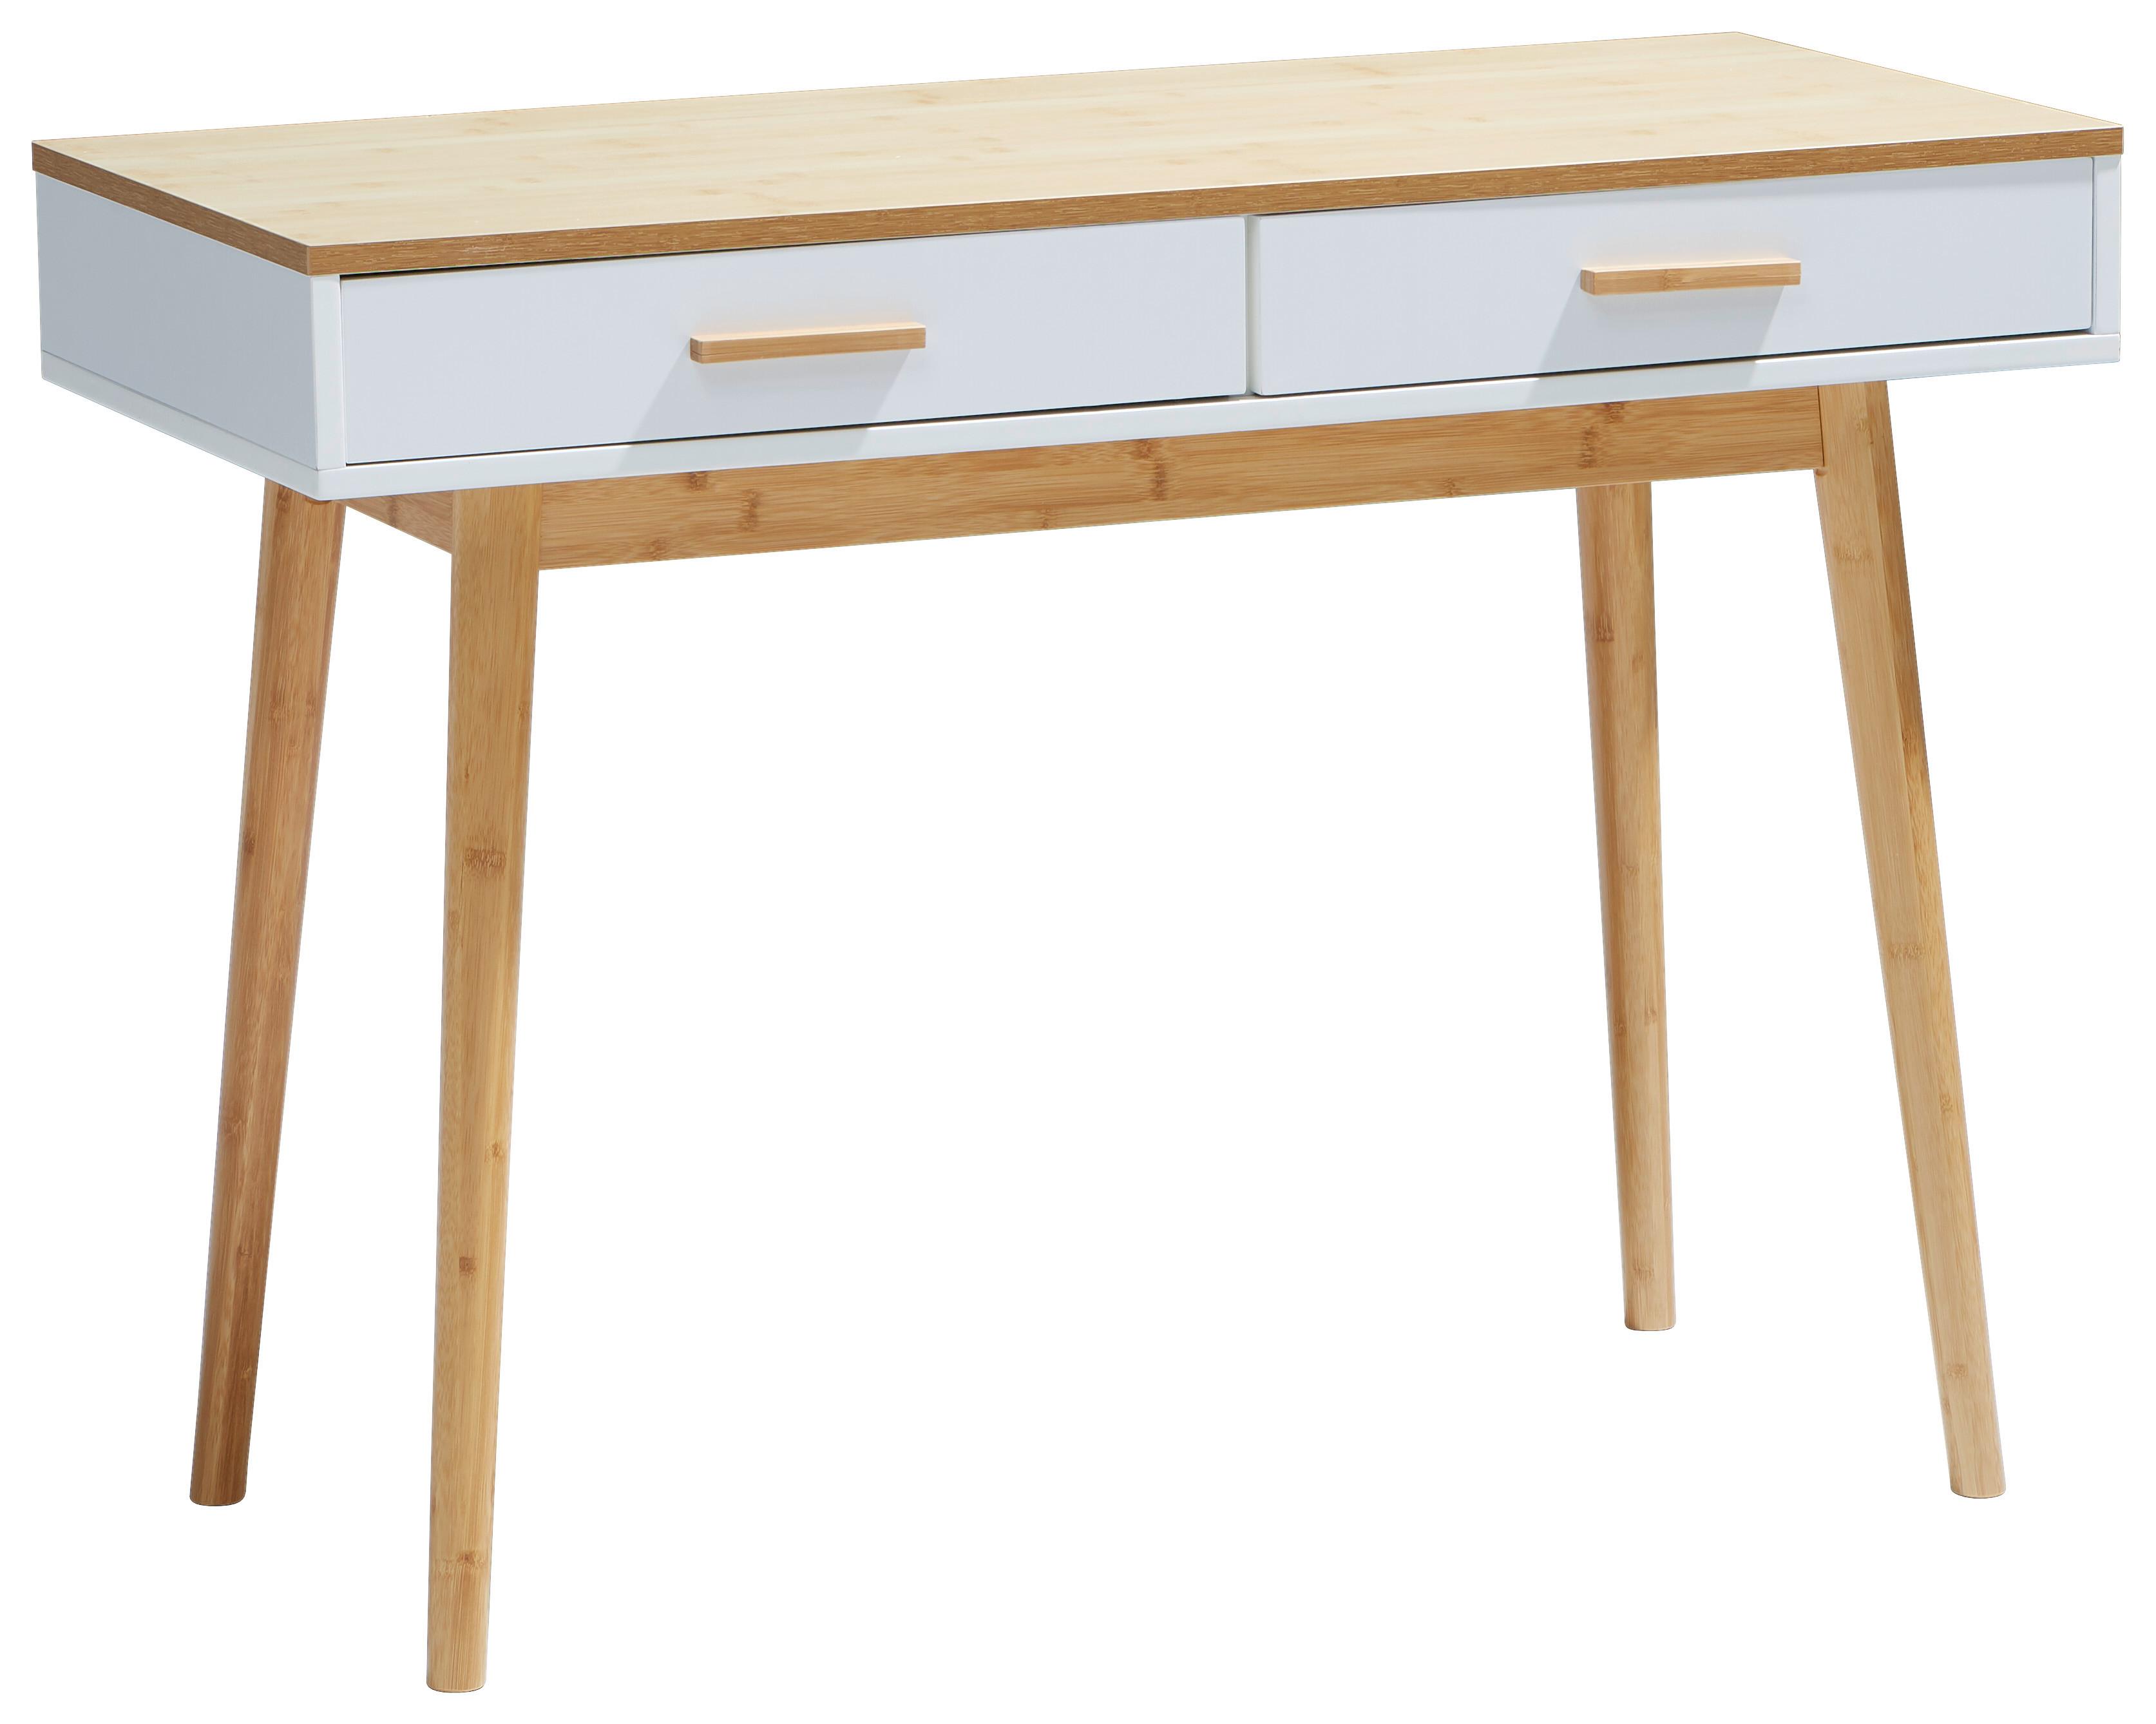 Schreibtisch teilmassiv B: 100cm H: 73,5cm Aarhus Weiß - Naturfarben/Weiß, LIFESTYLE, Holz/Holzwerkstoff (100/73,5/45cm) - MID.YOU